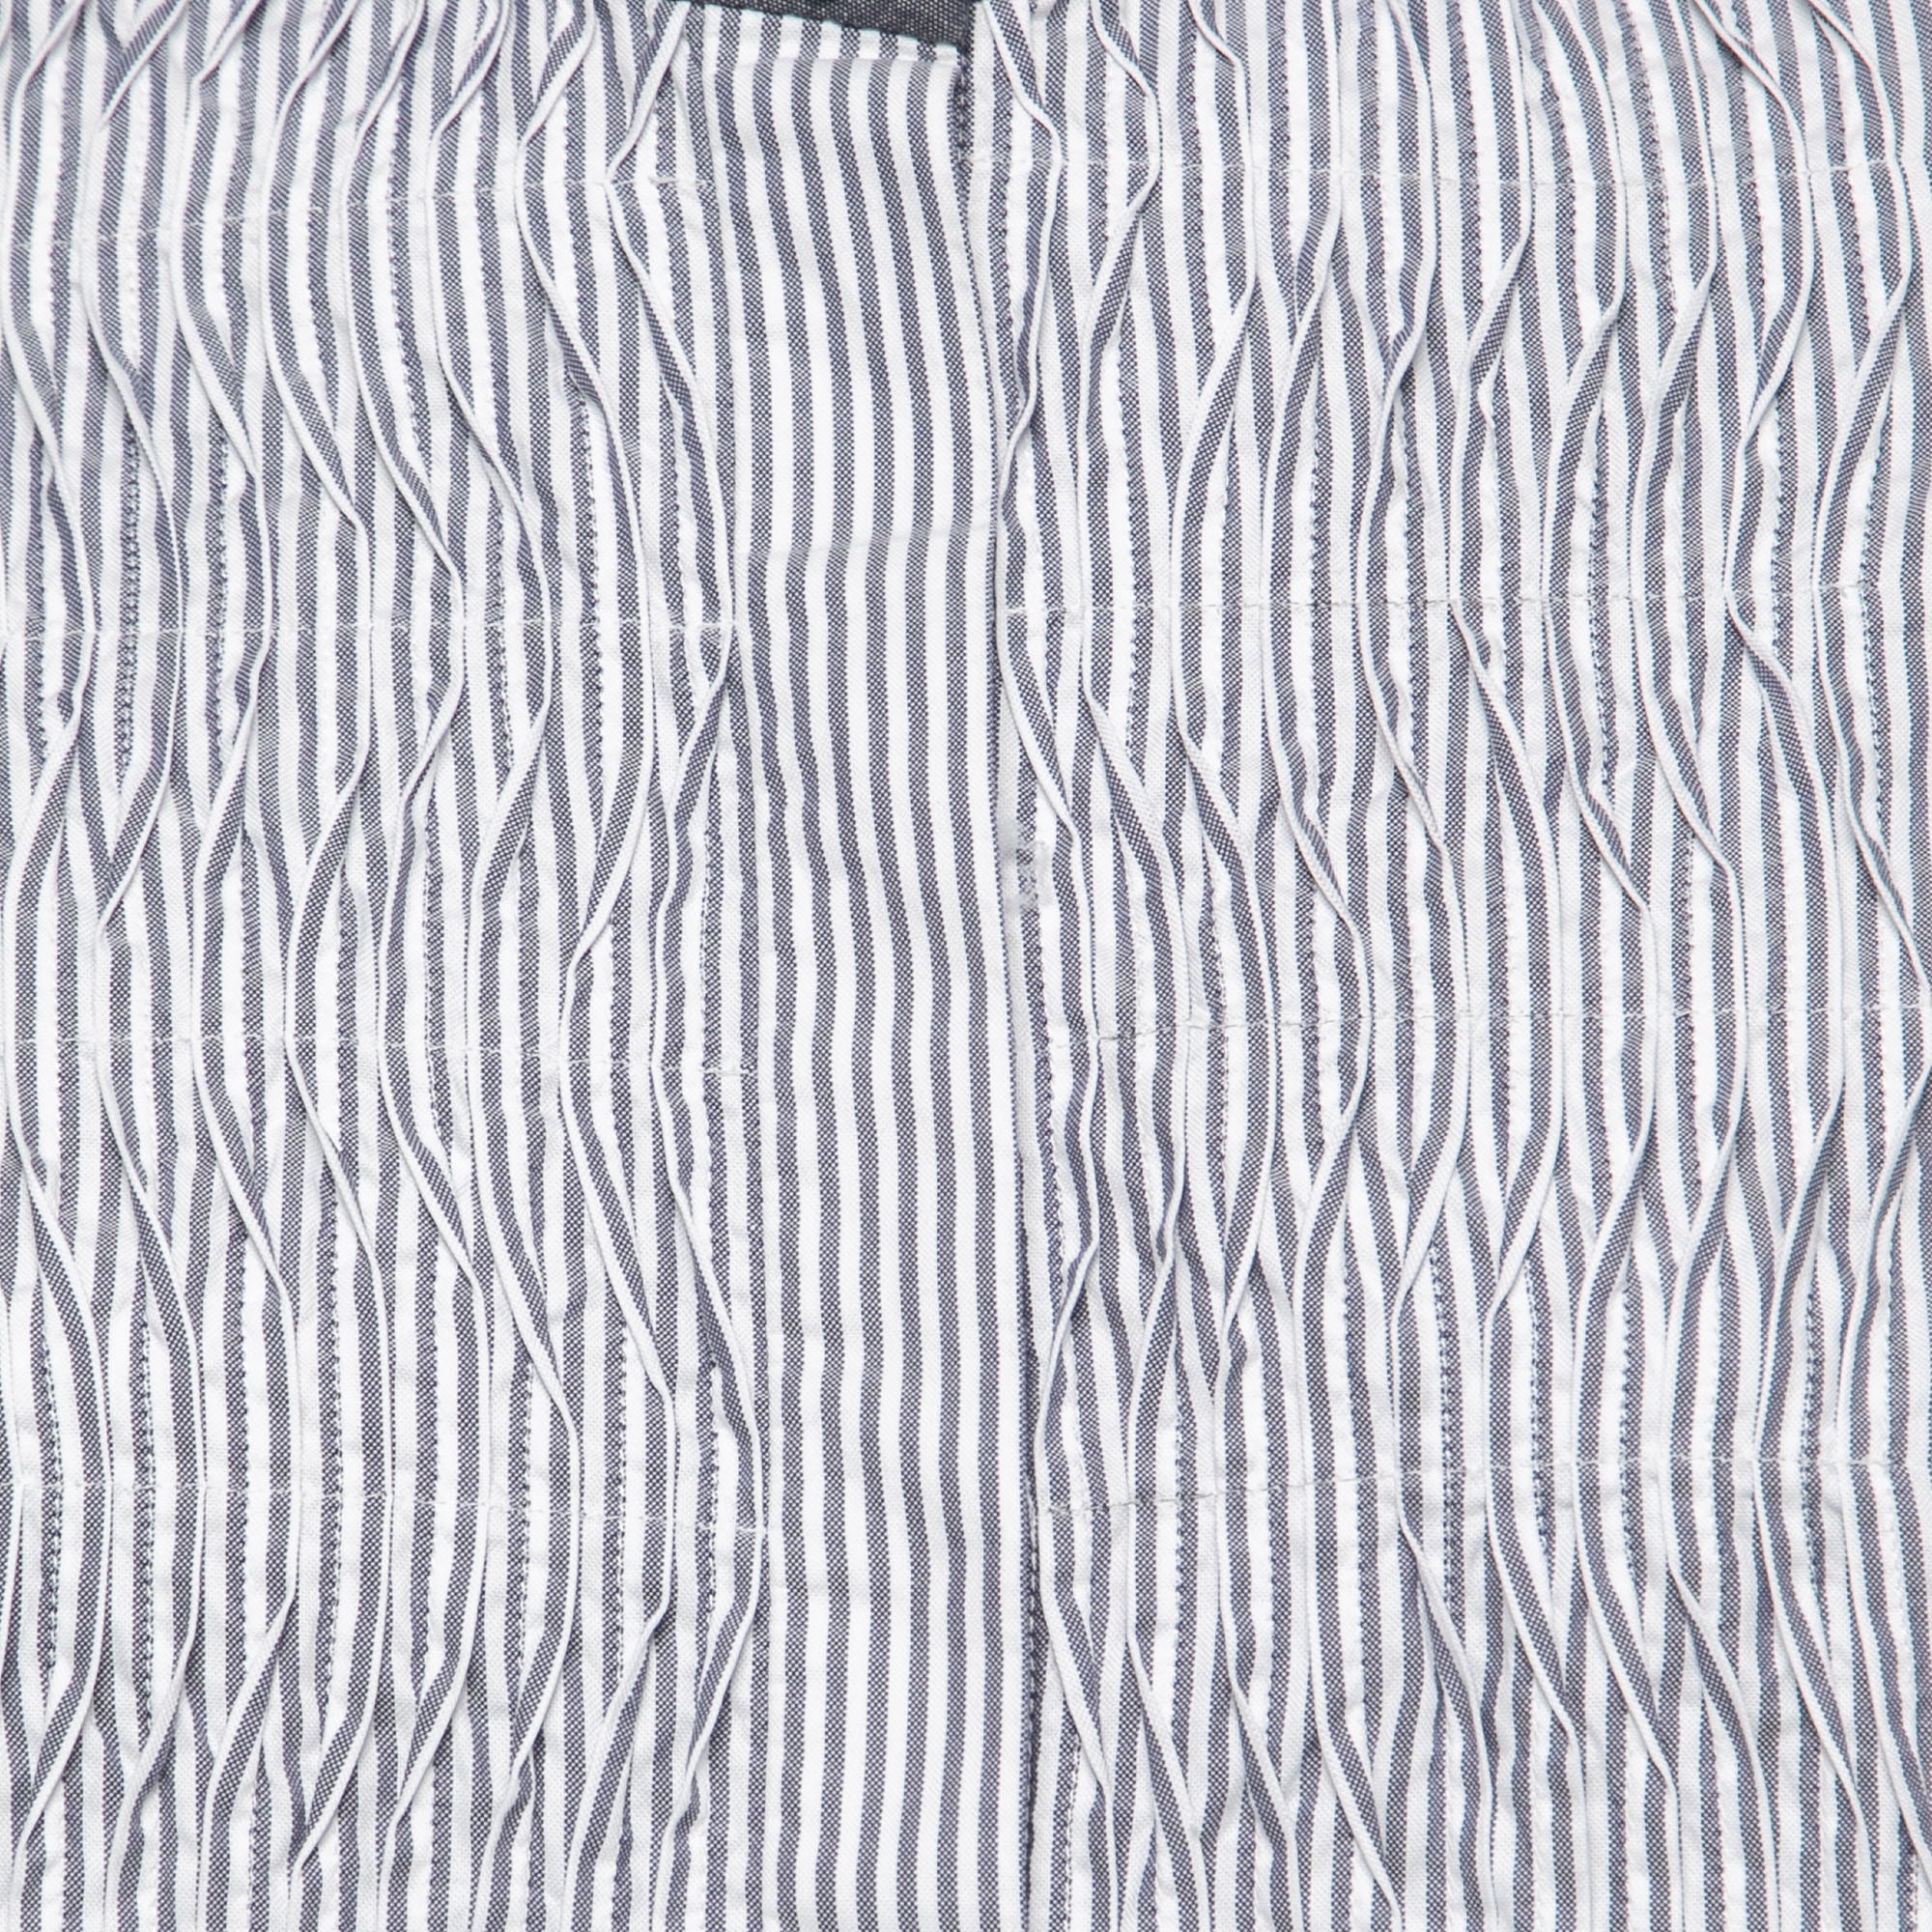 Roksanda Dark Blue Striped Cotton Pleated Front Tunic Top S